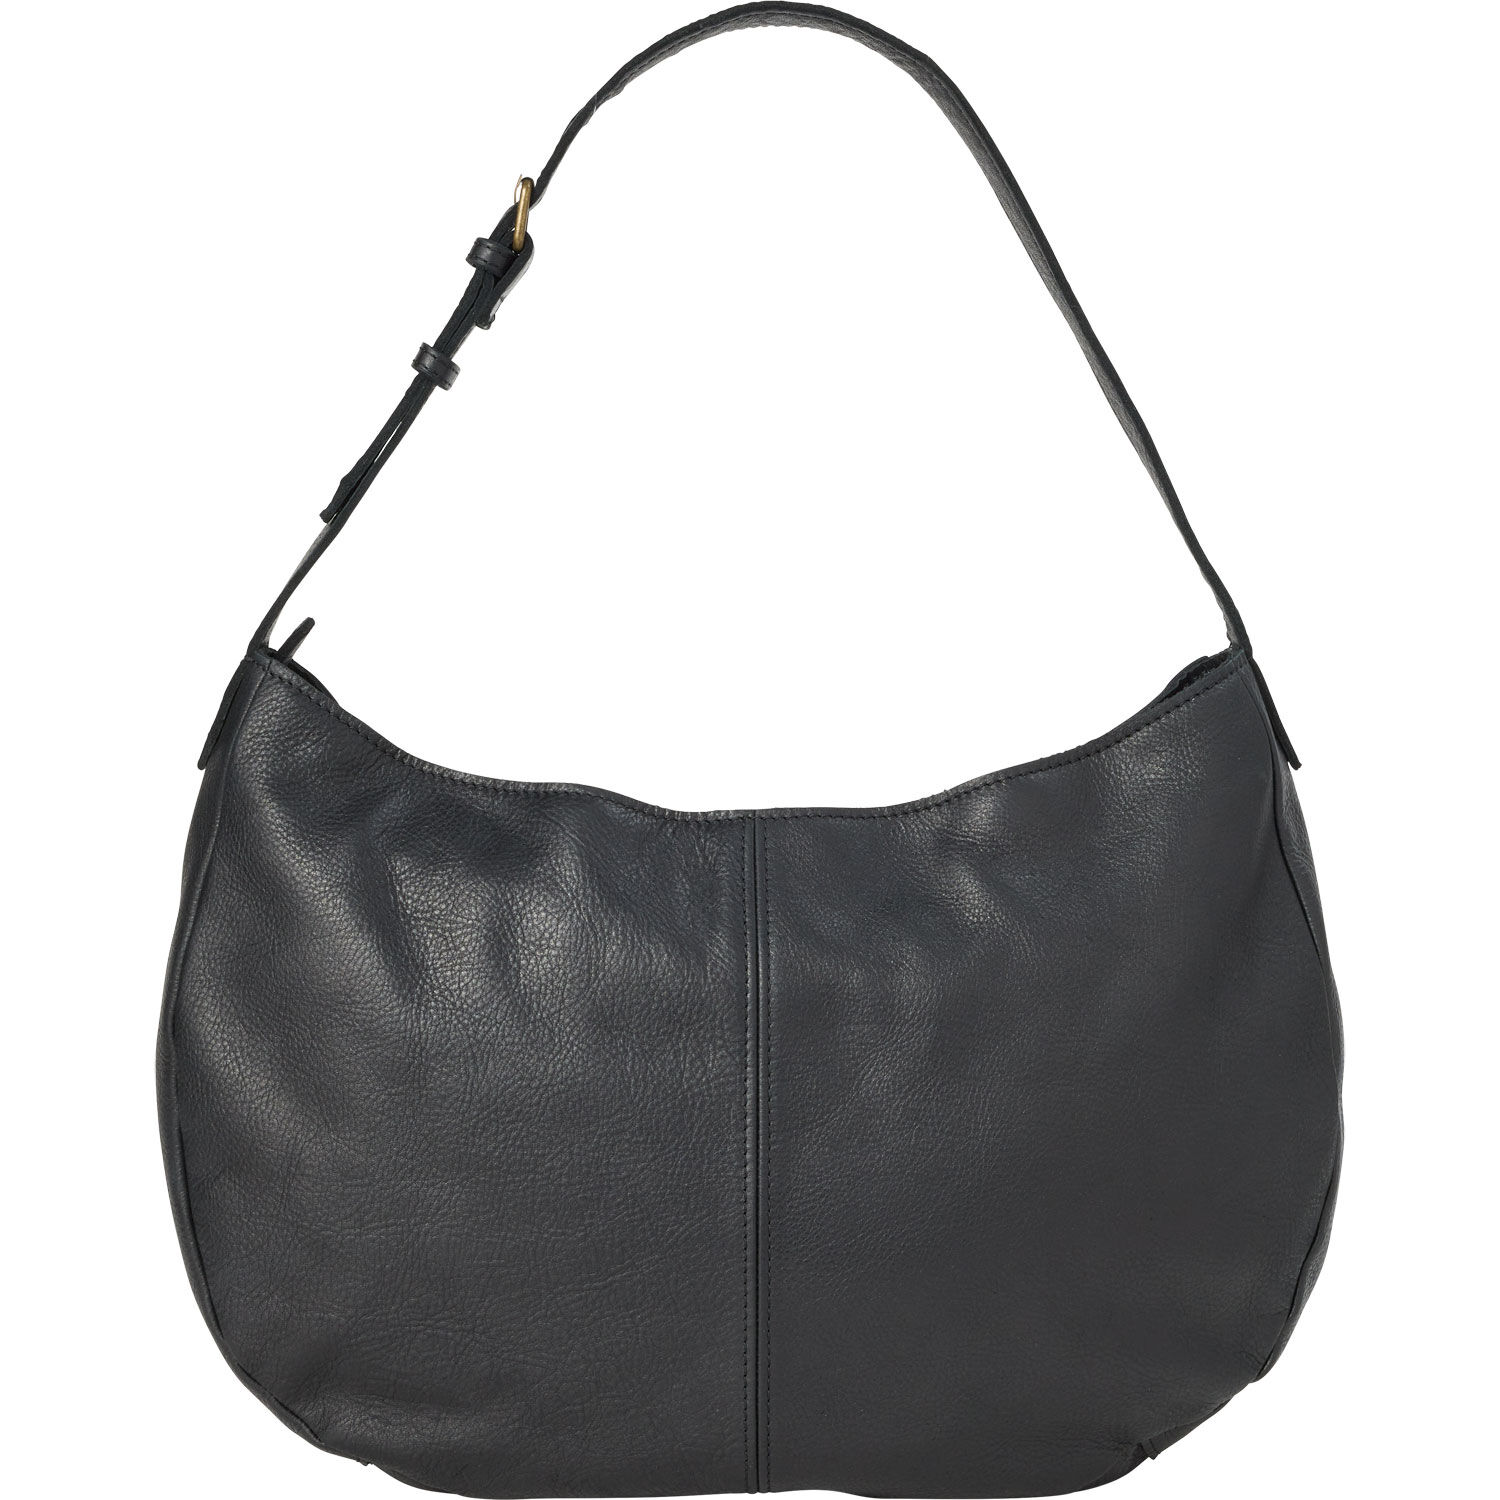 Genuine Leather Bag With Adjustable Shoulder Strap - Etsy